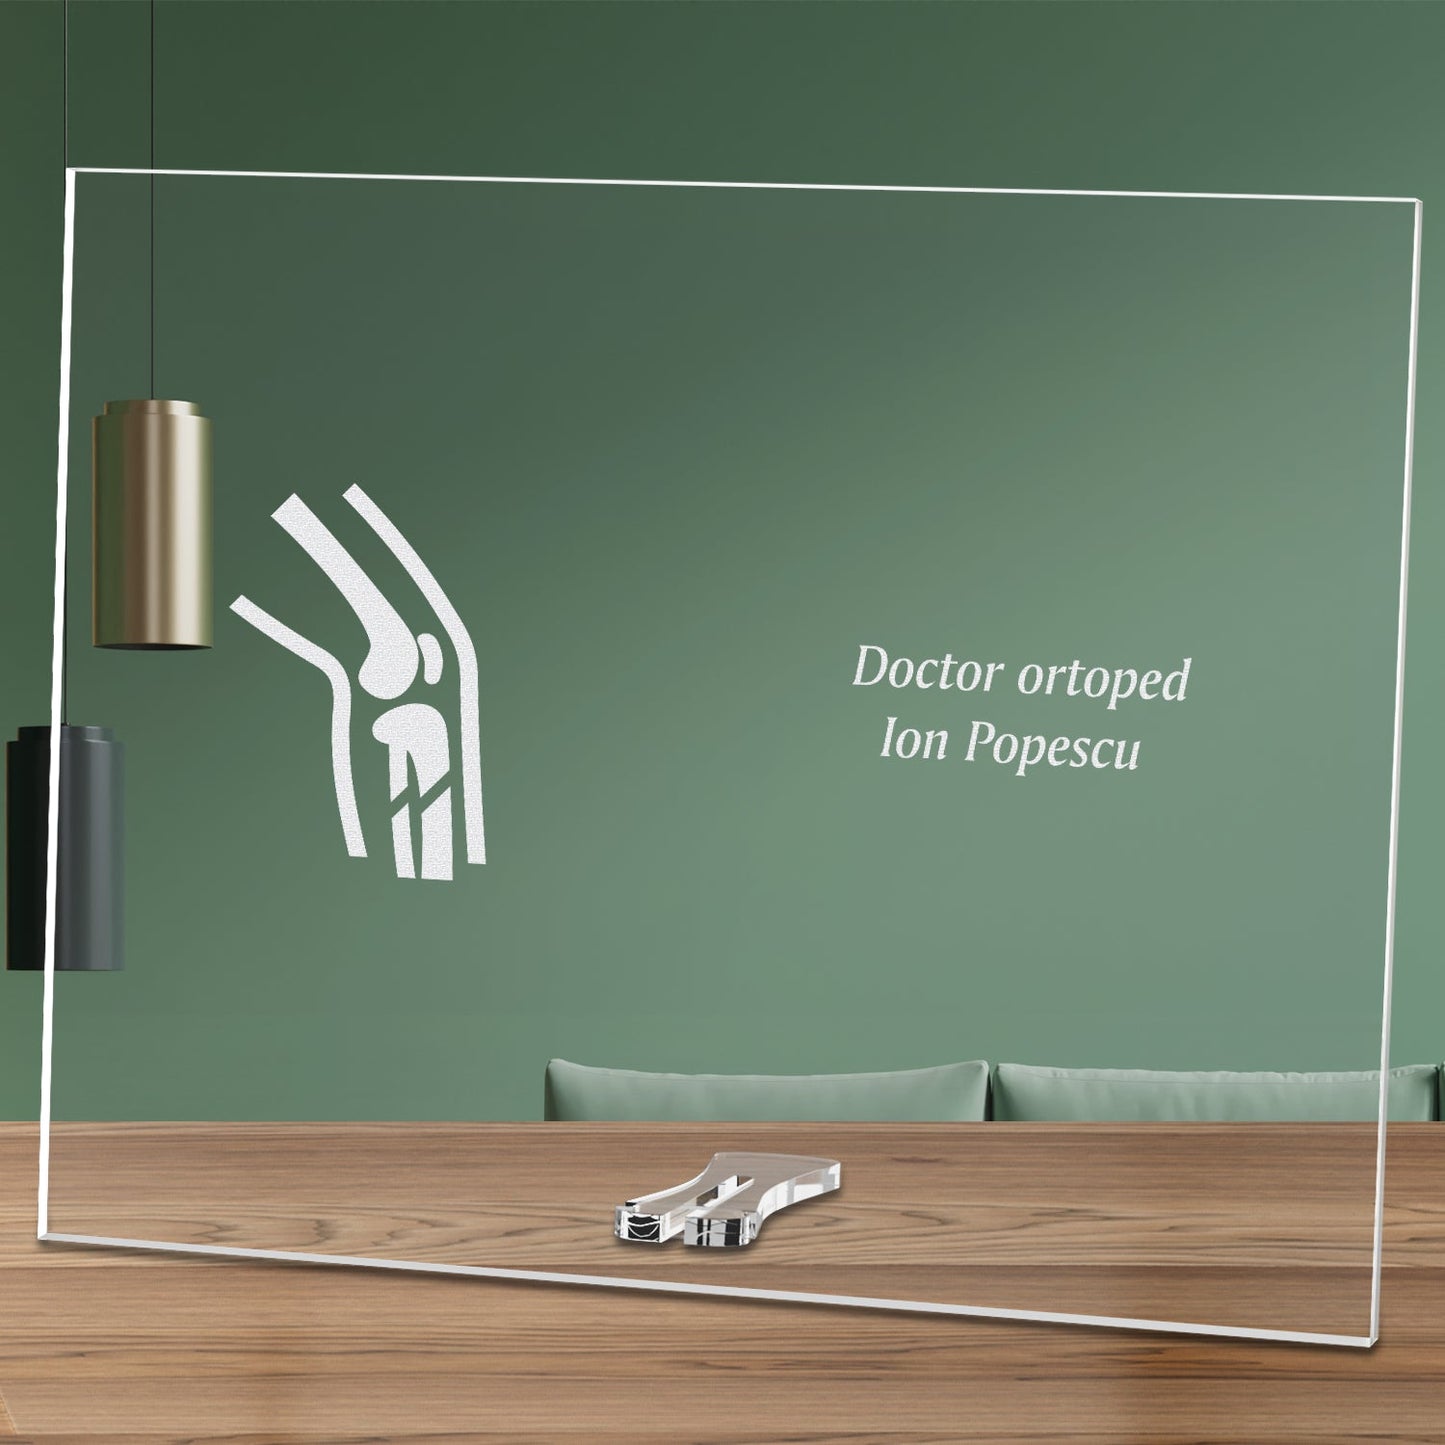 Cadou personalizat placheta din plexiglas - Doctor ortoped - ghizbi.ro